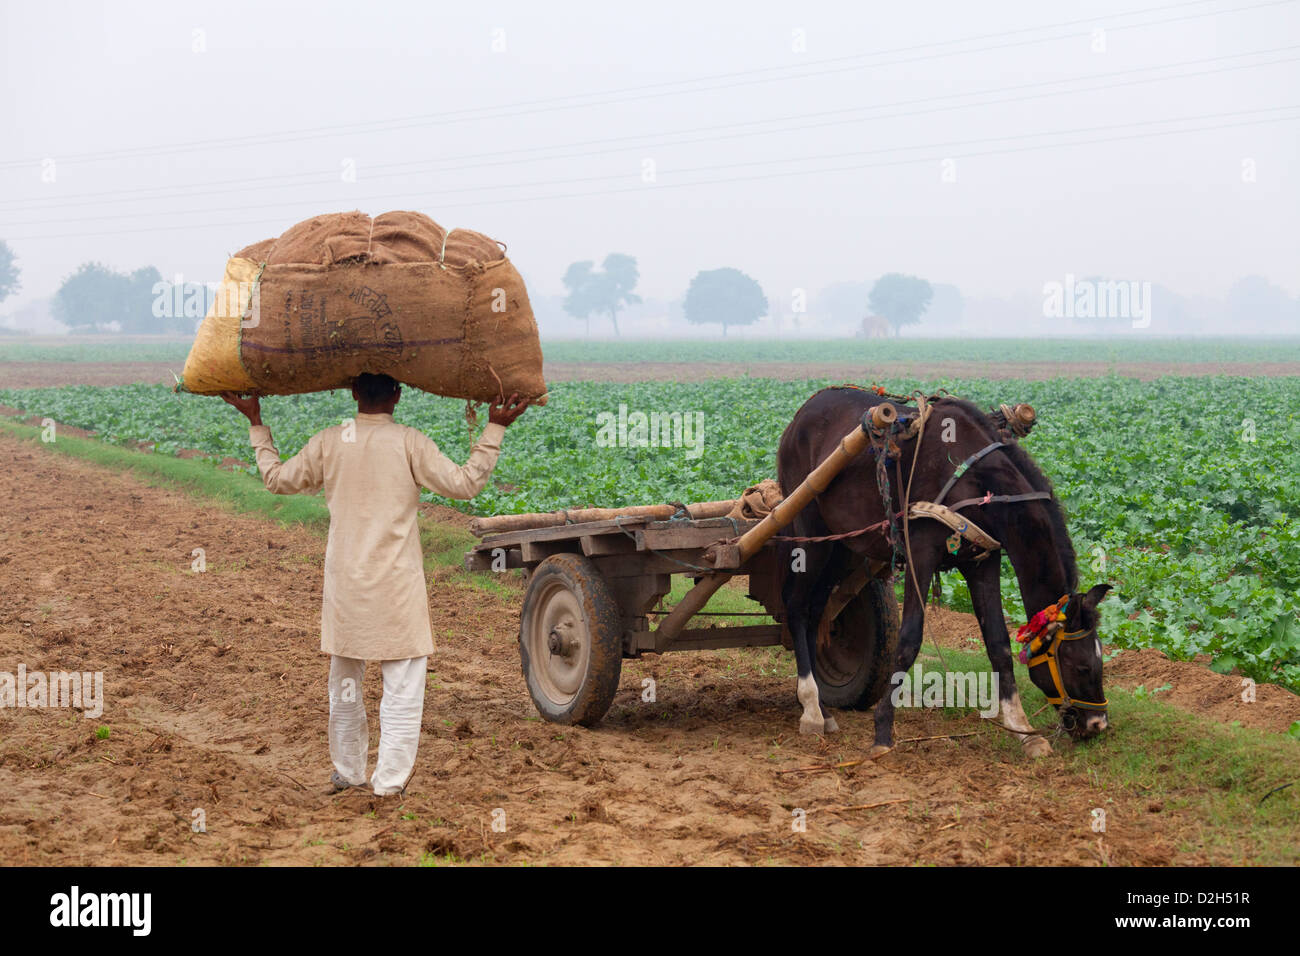 L'Inde, Uttar Pradesh, agriculteur exerçant son sac en toile de jute plein de récolte à cheval et panier dans le champ Banque D'Images